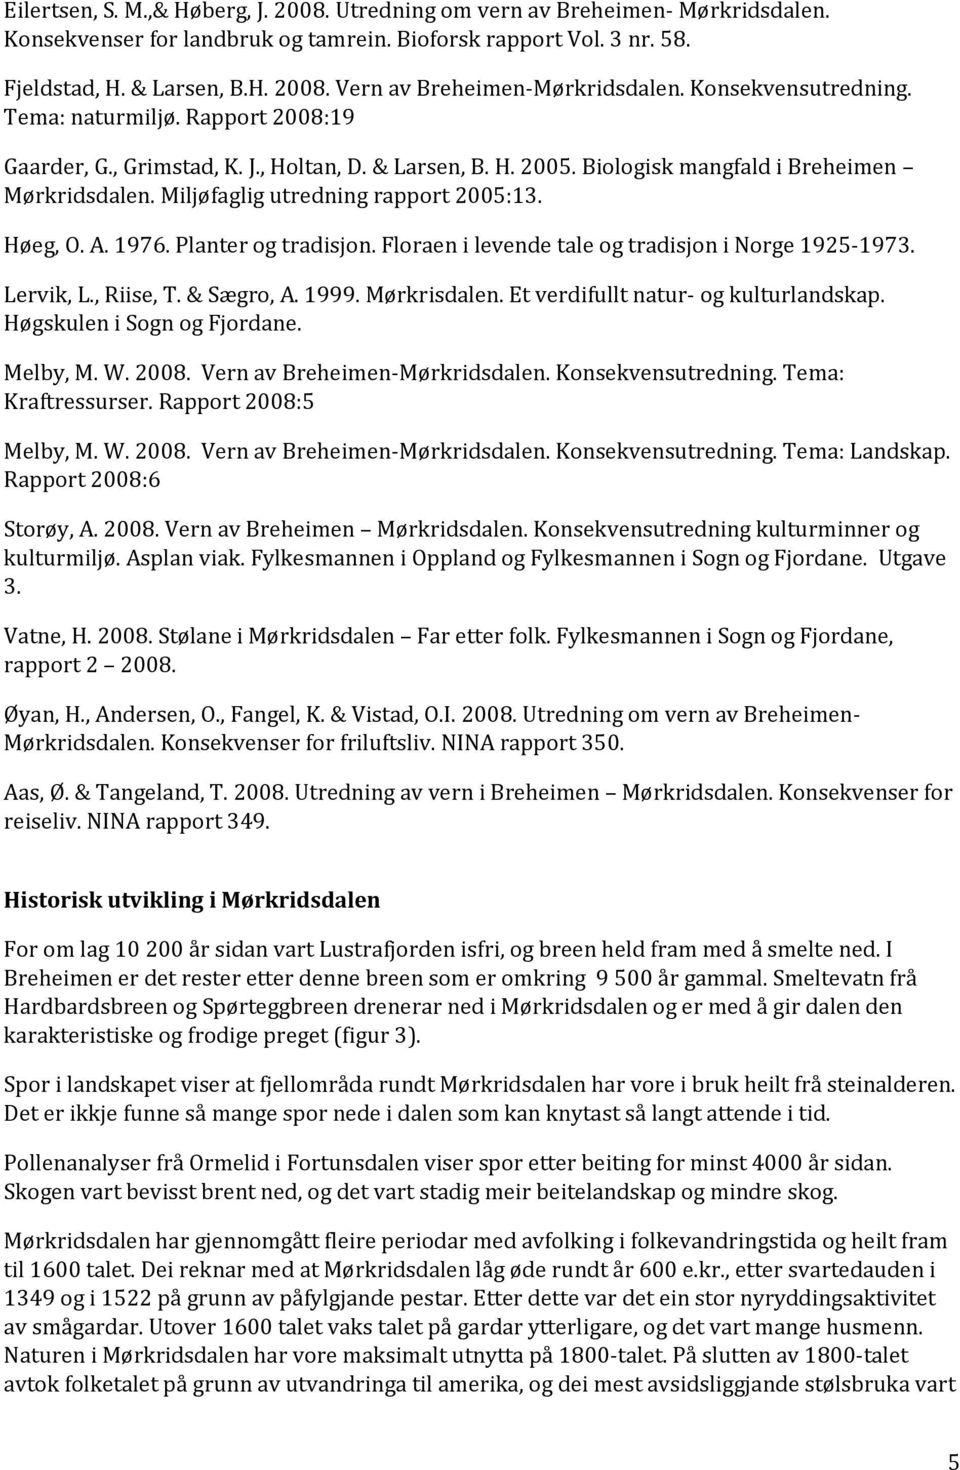 Miljøfaglig utredning rapport 2005:13. Høeg, O. A. 1976. Planter og tradisjon. Floraen i levende tale og tradisjon i Norge 1925-1973. Lervik, L., Riise, T. & Sægro, A. 1999. Mørkrisdalen.